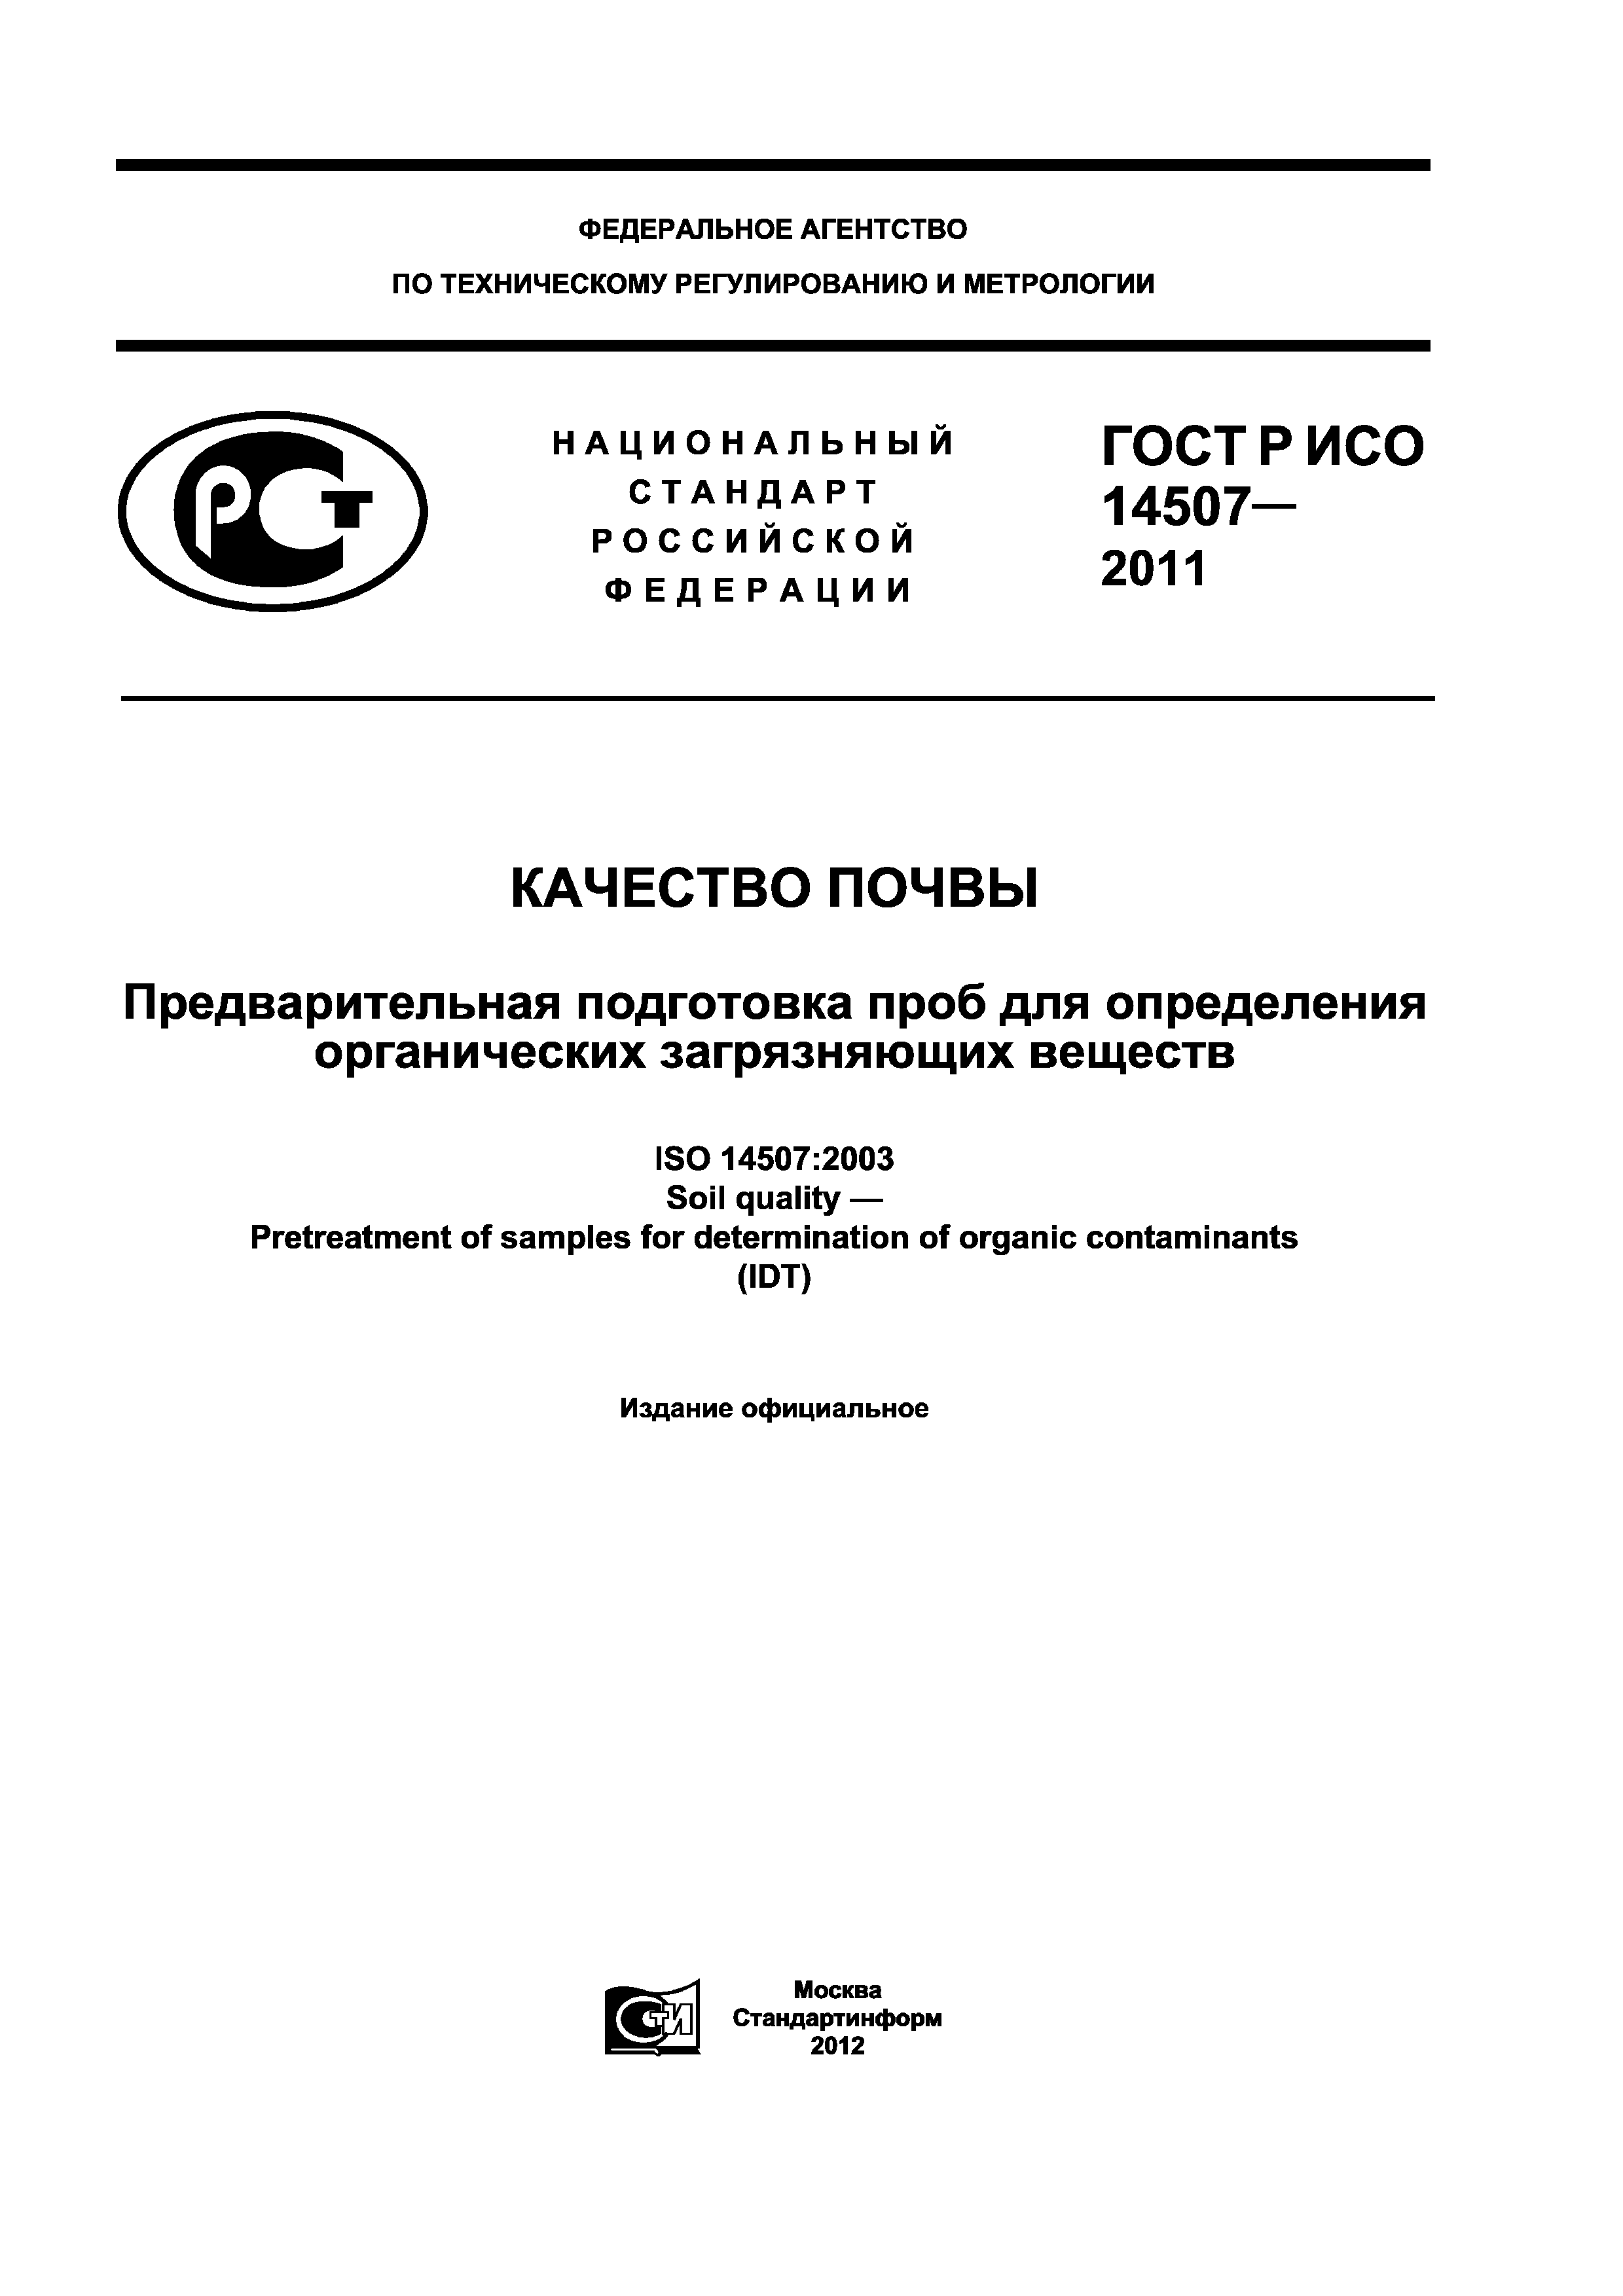 ГОСТ Р ИСО 14507-2011